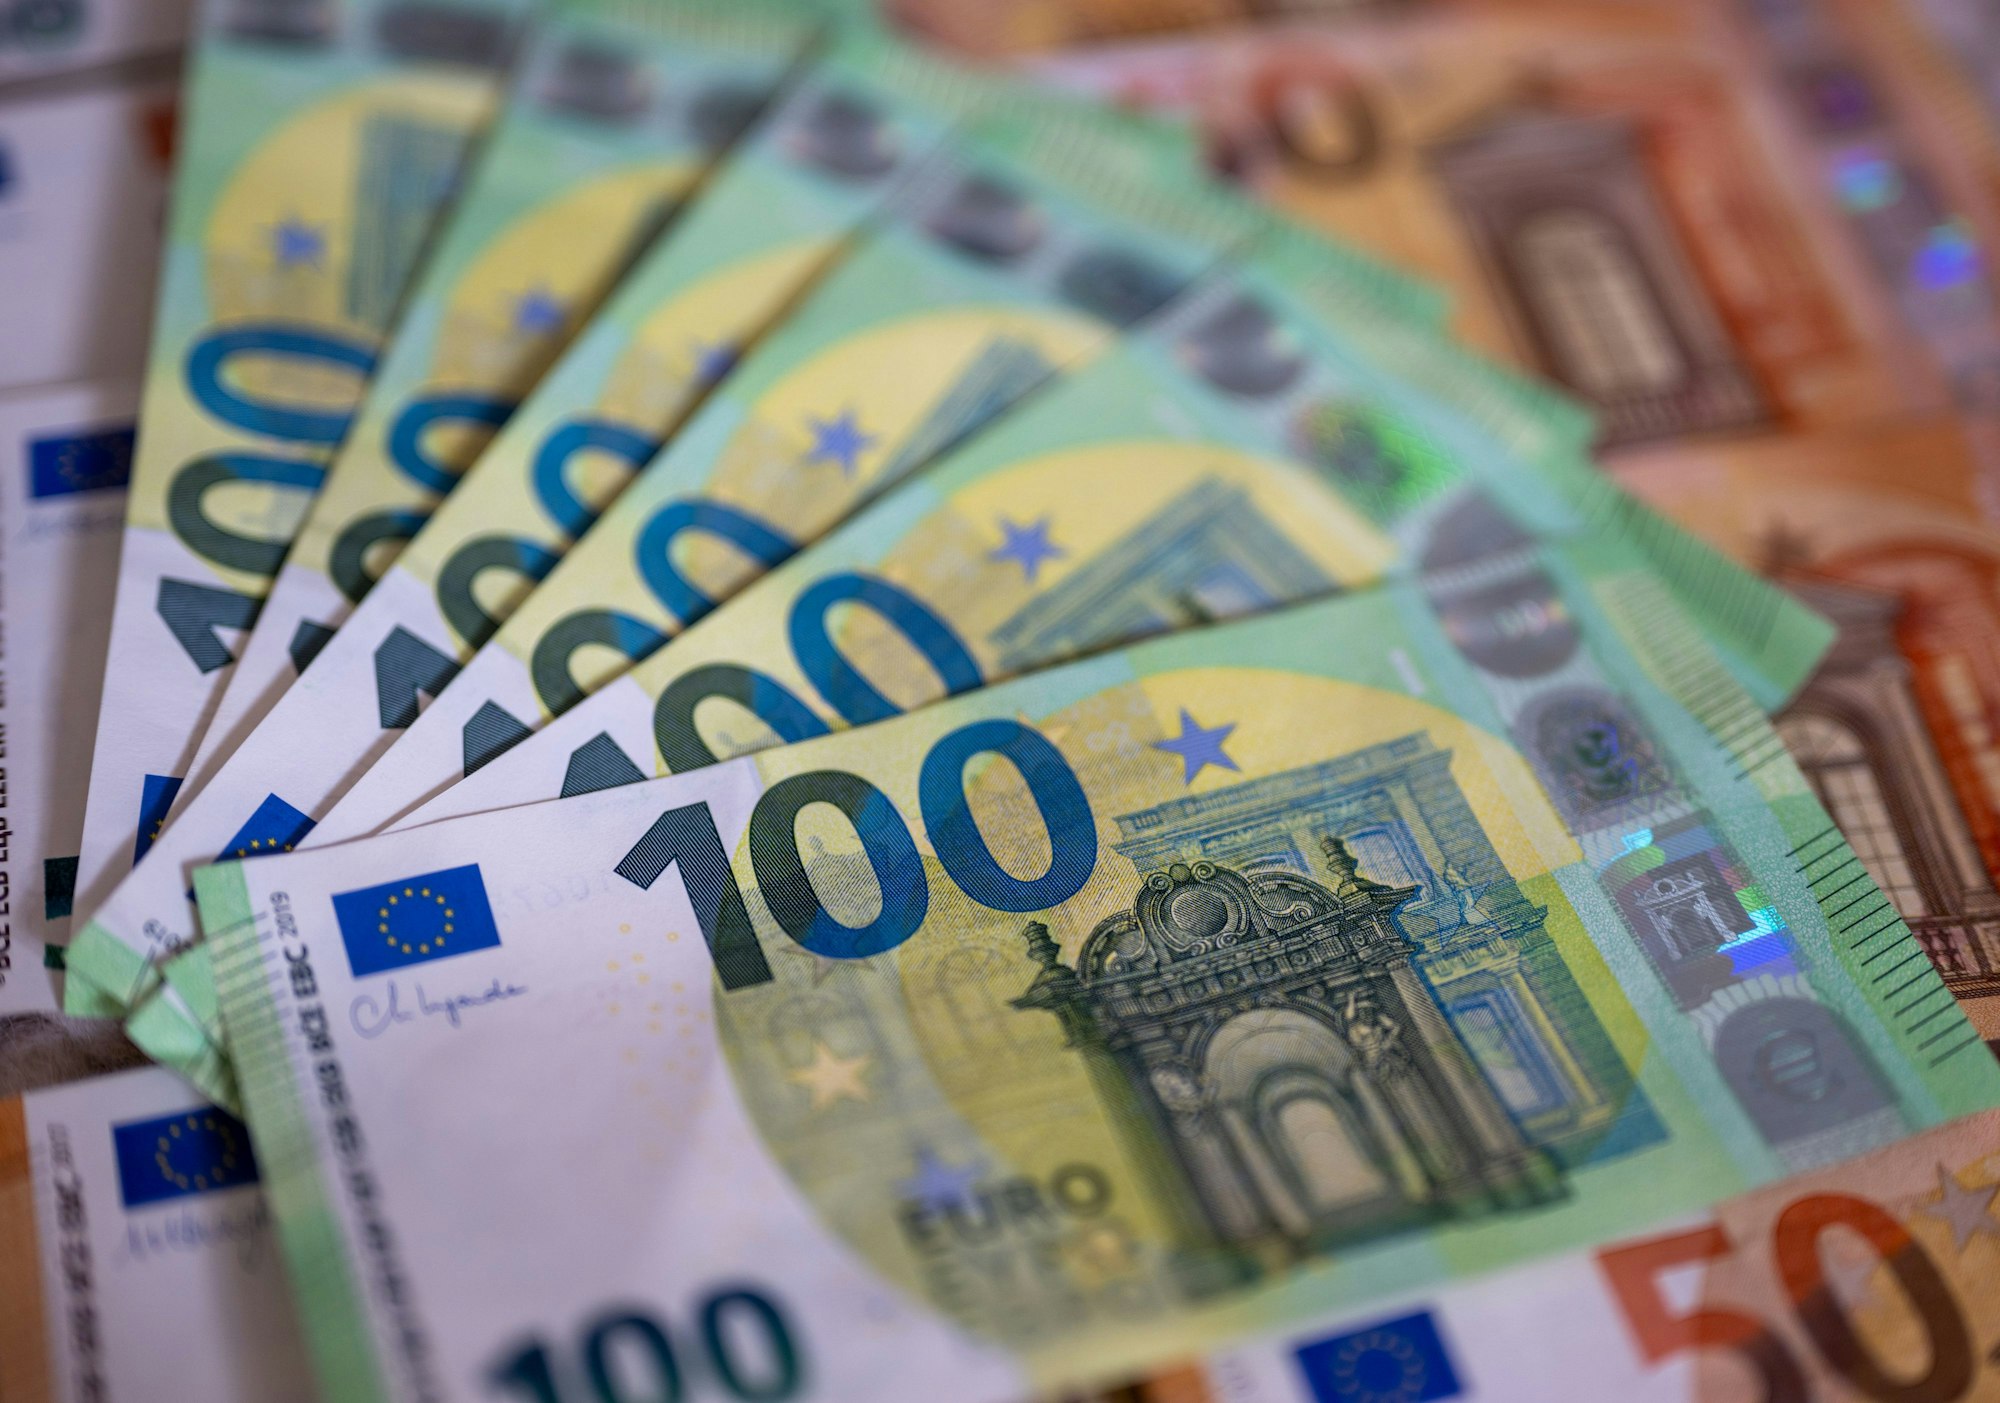 Geldscheine mit dem Wert von 100 und 50 Euro liegen auf einem Tisch.